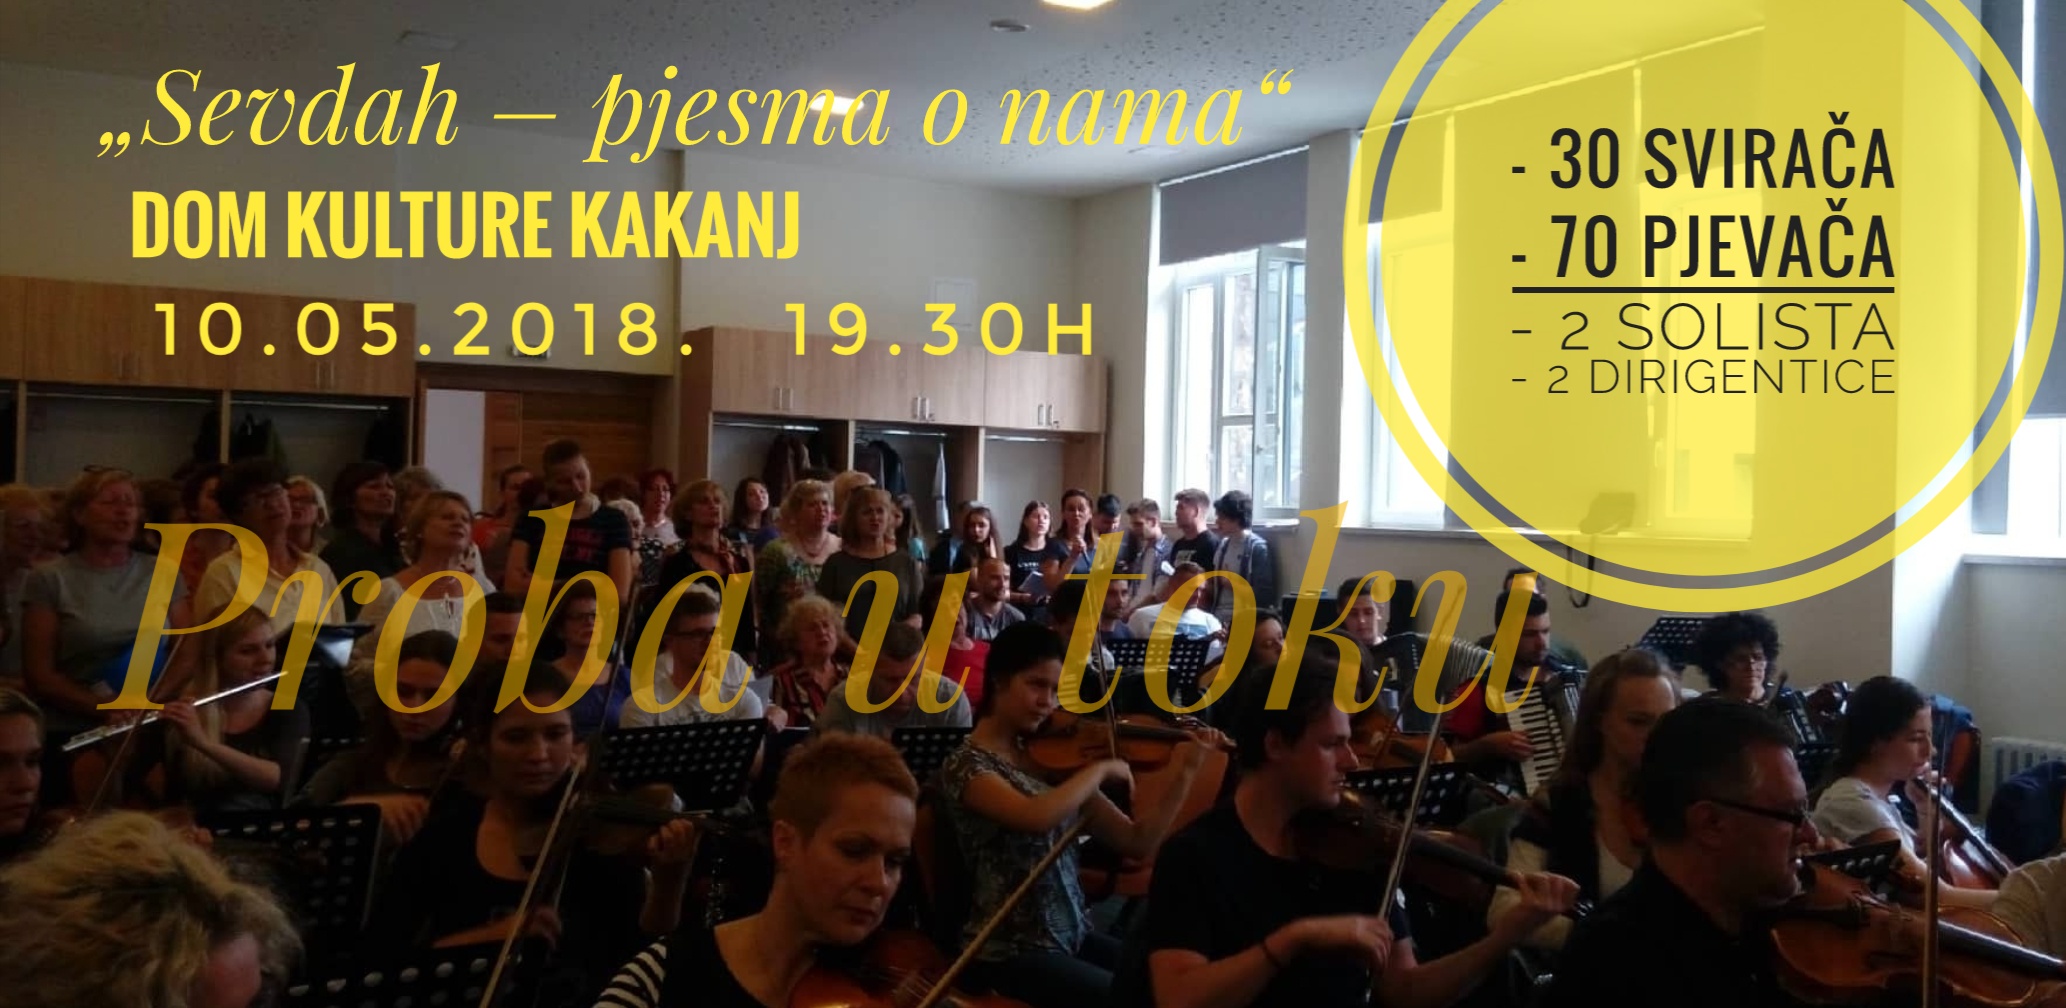 U toku probe za koncert zakazan za 10.5.2018. u Domu kulture Kakanj (u ponedjeljak press): 30 svirača, 70 pjevača, 2 solista, 2 dirigentice